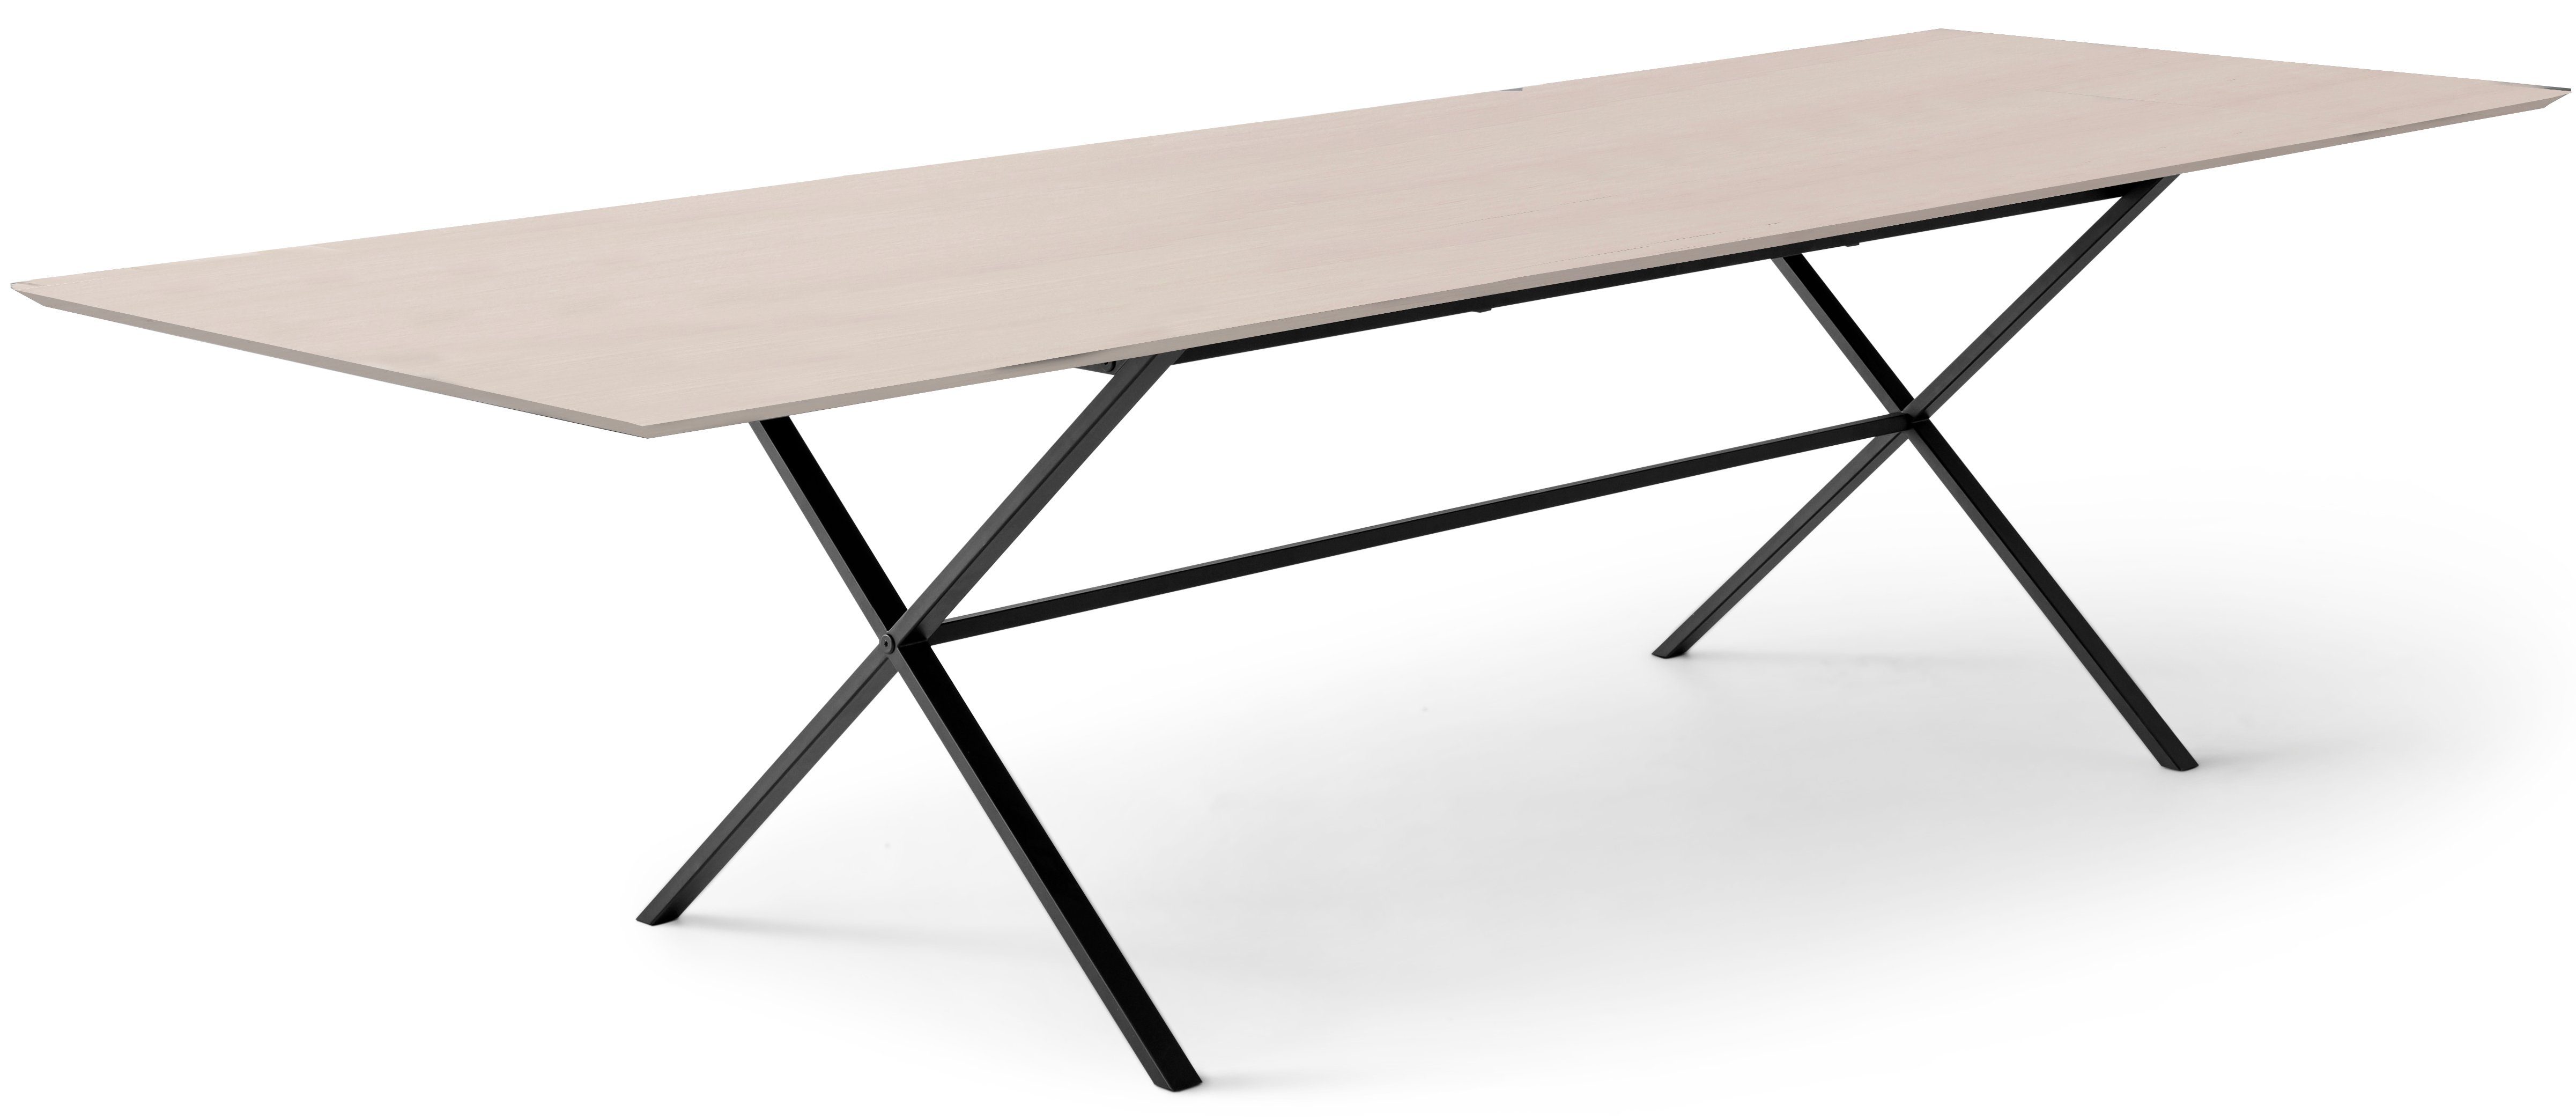 by Hammel gekreuztes Esstisch Metallgestell Furniture Naturfarben Tischplatte Meza MDF, Hammel, rechteckige